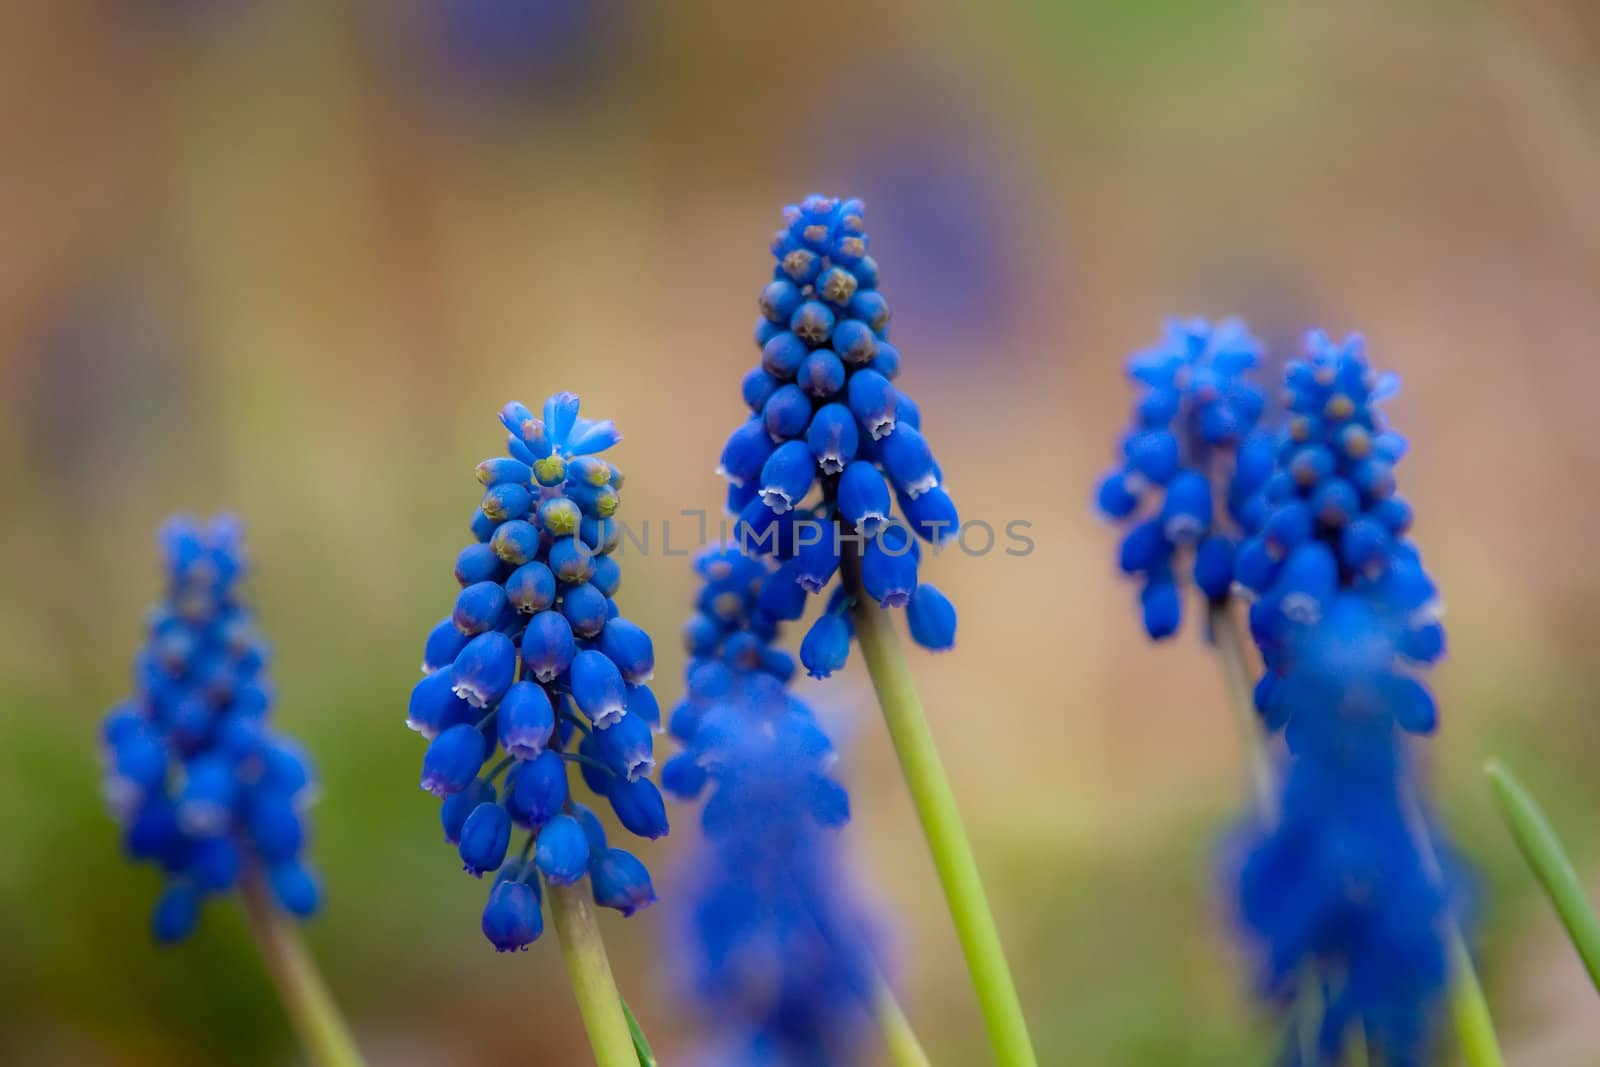 blue hyacinth by digidreamgrafix